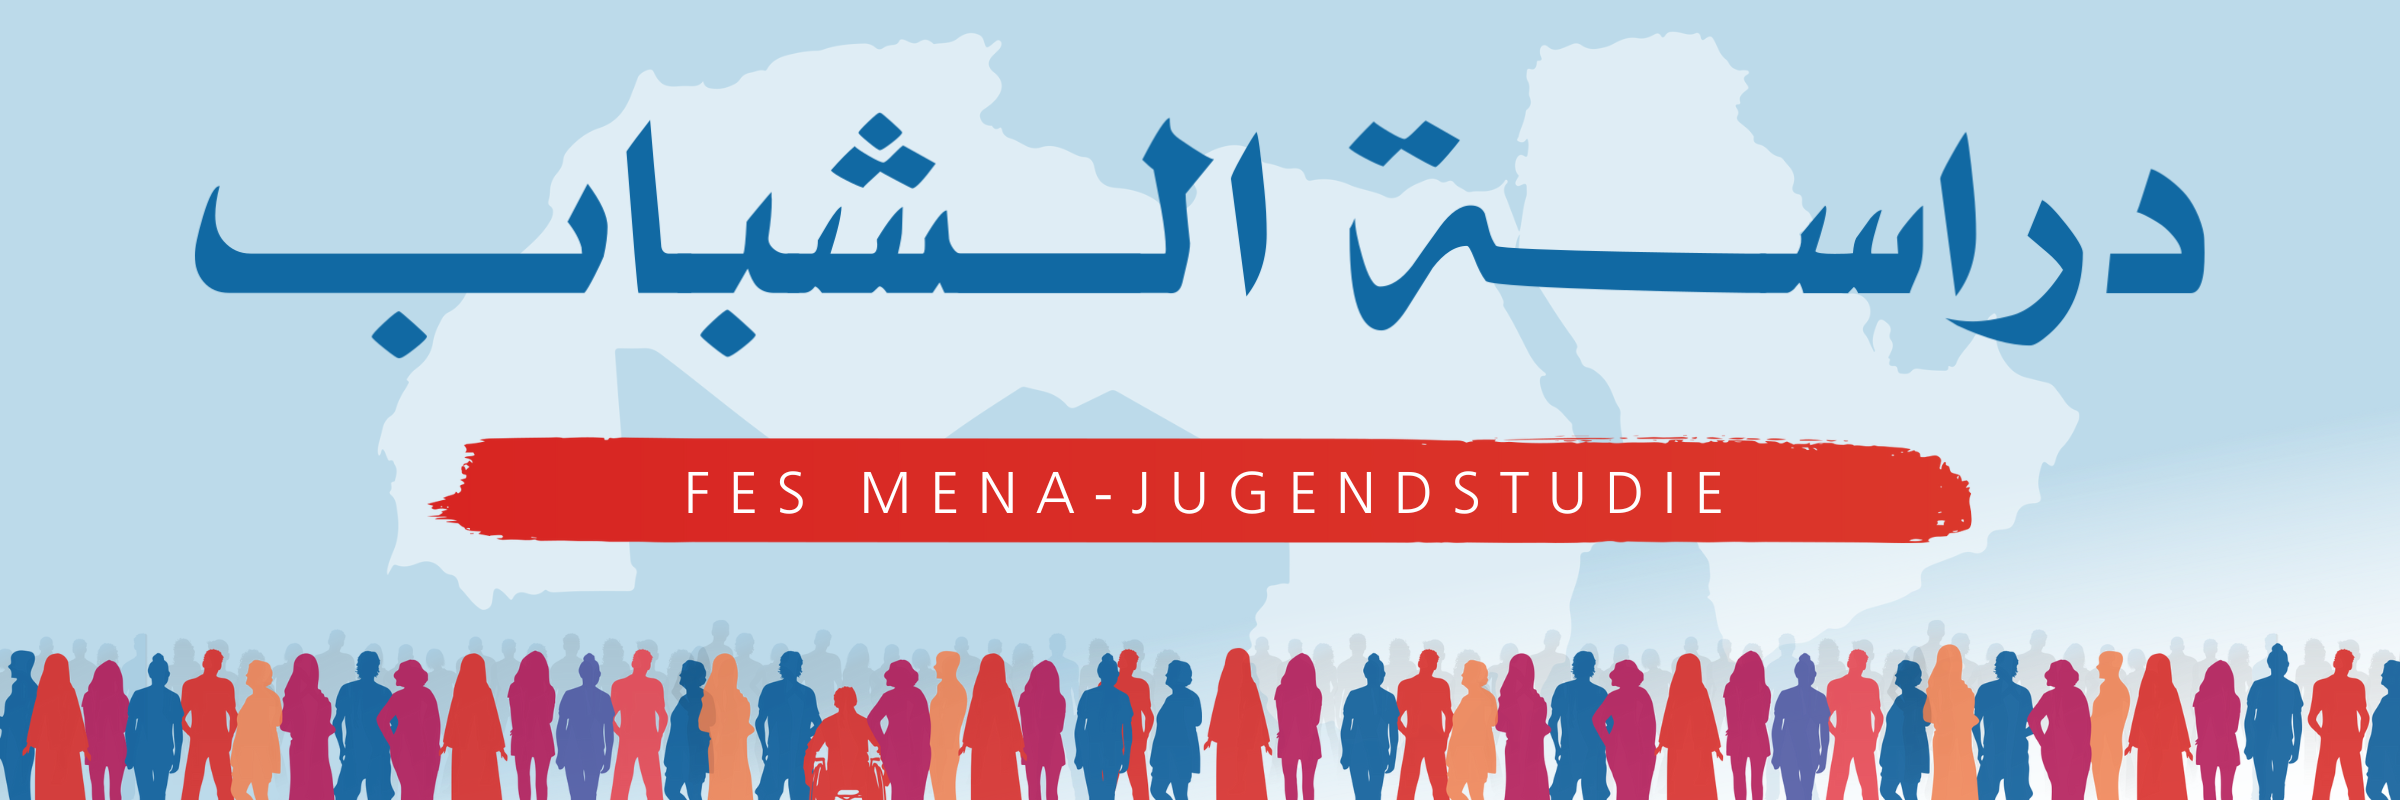 Am unteren Bildrand sind Menschen in Silouetten in einer Reihe aufgestellt. Vor einem blauen Hintergrund erscheint die Schrift "FES MENA - Jugendstudie" auf Deutsch und auf Arabisch